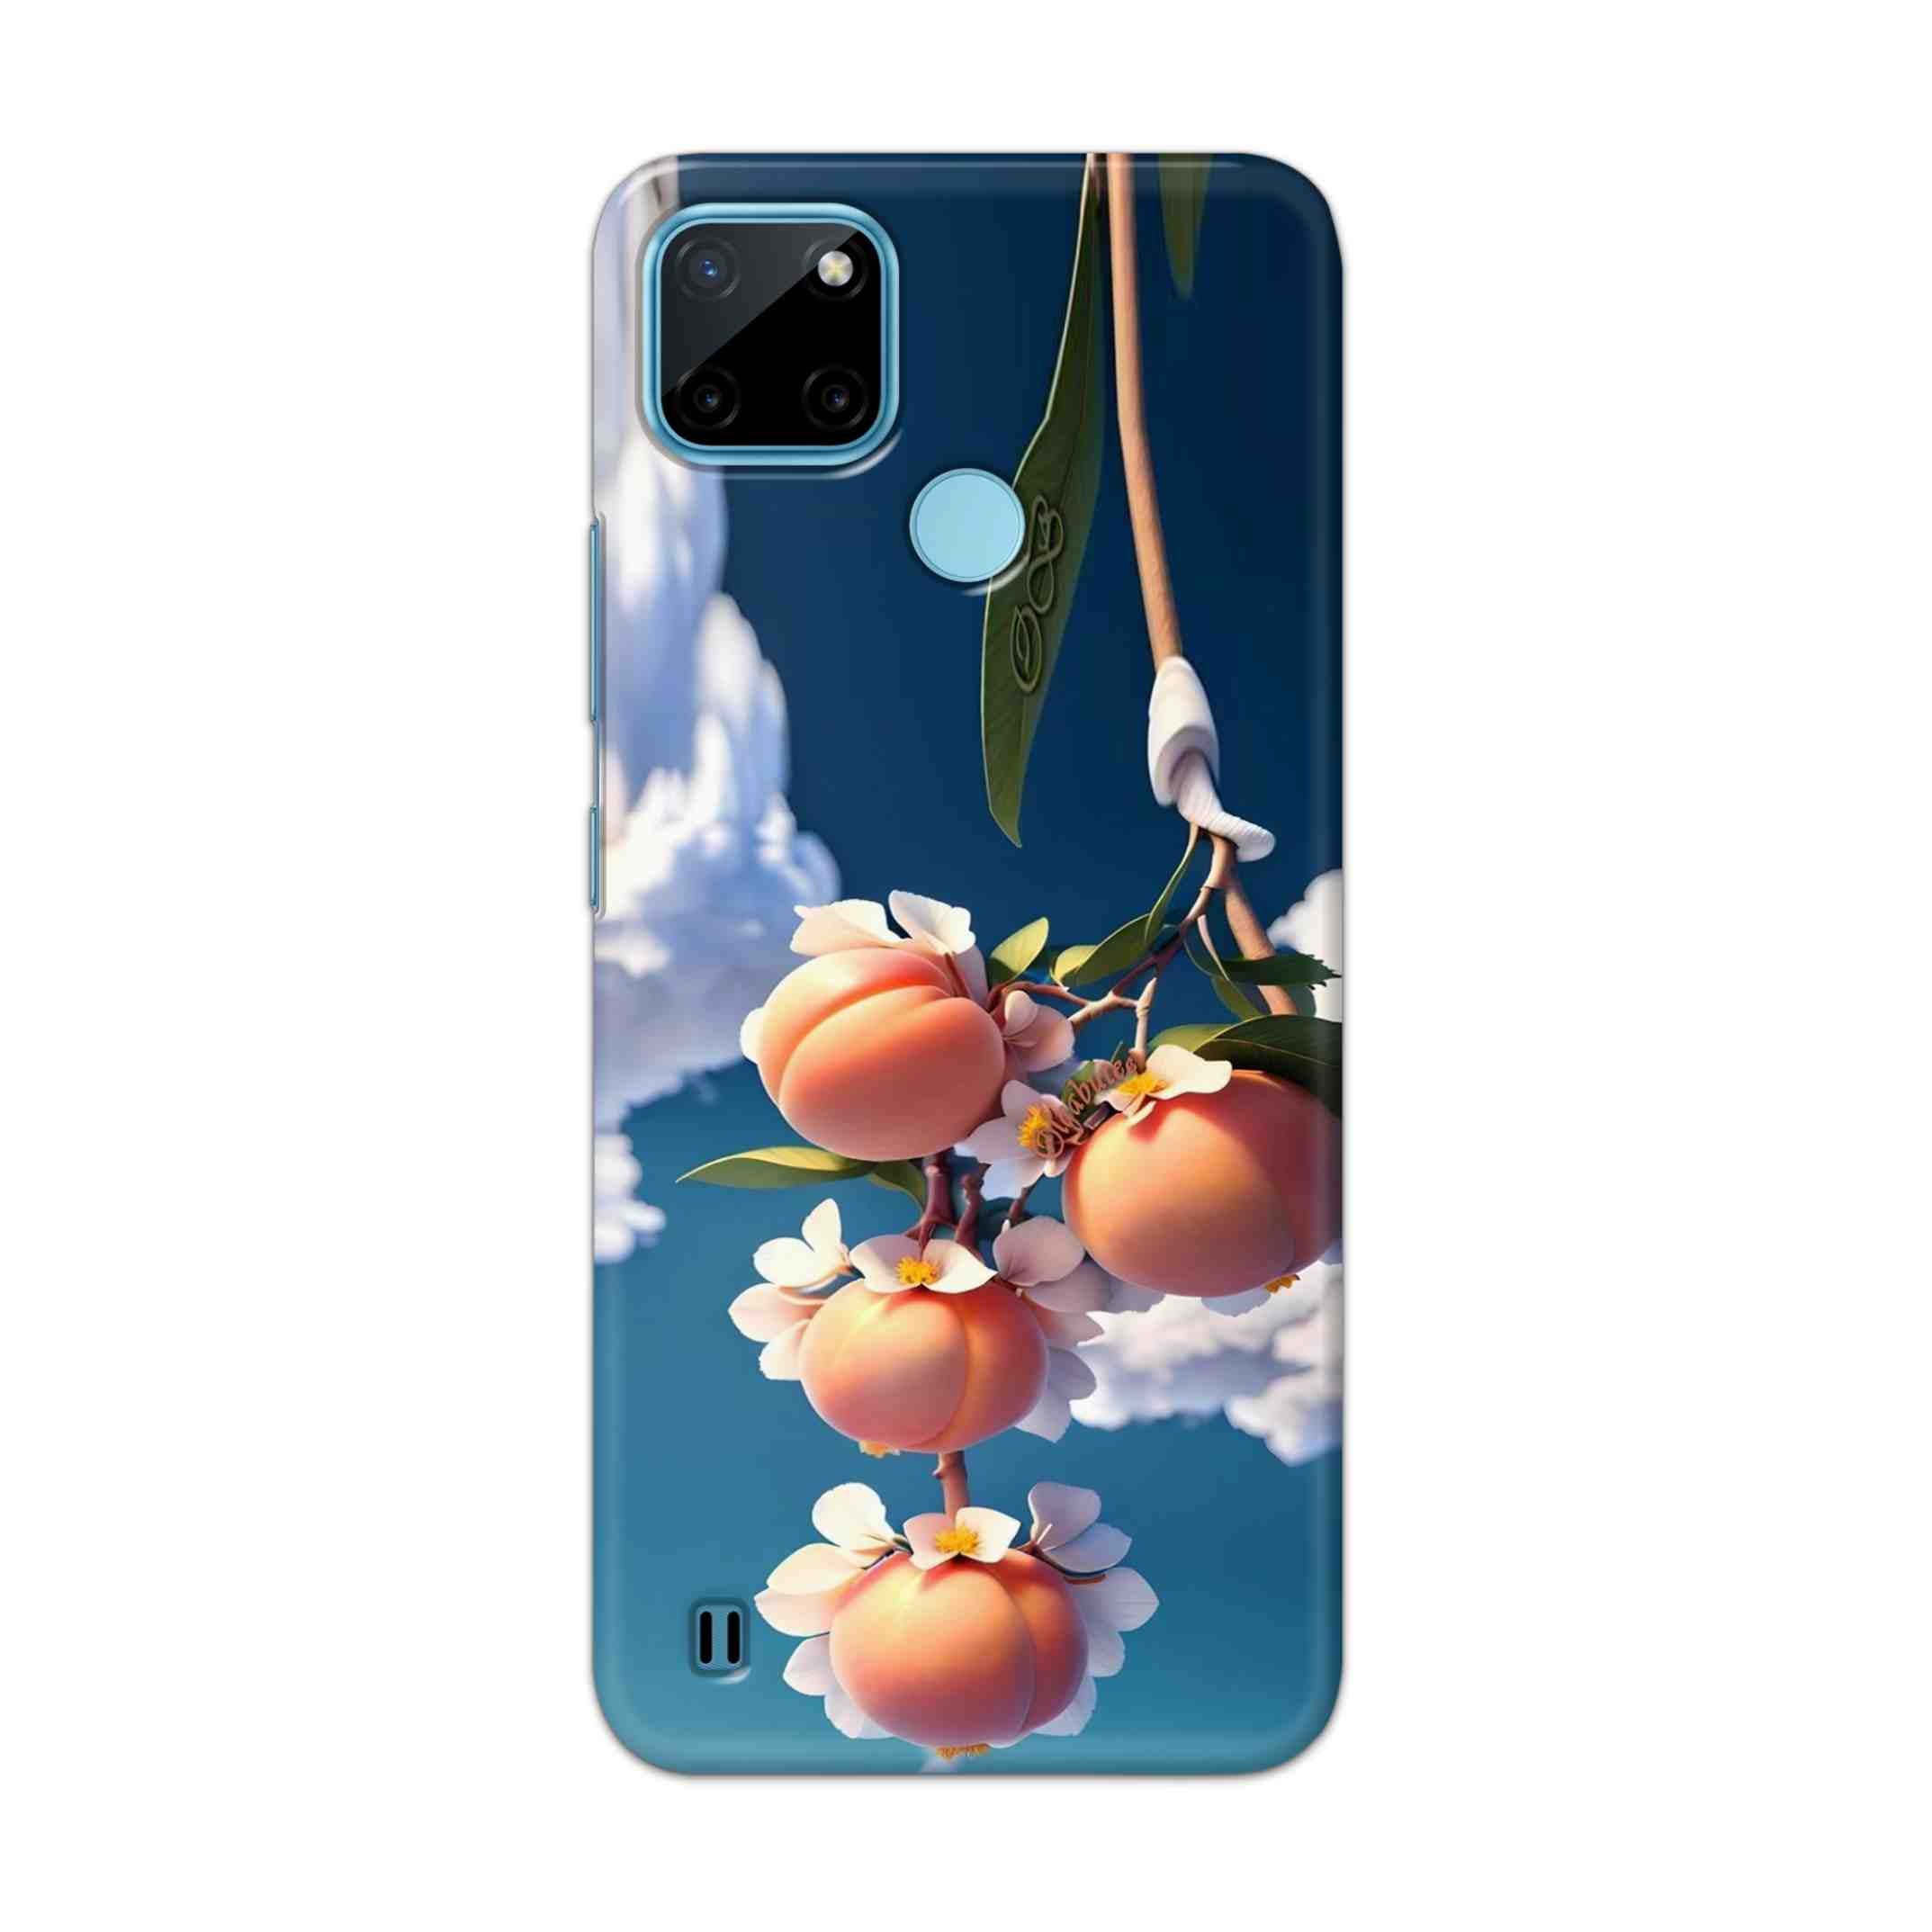 Buy Fruit Hard Back Mobile Phone Case Cover For Realme C21Y Online